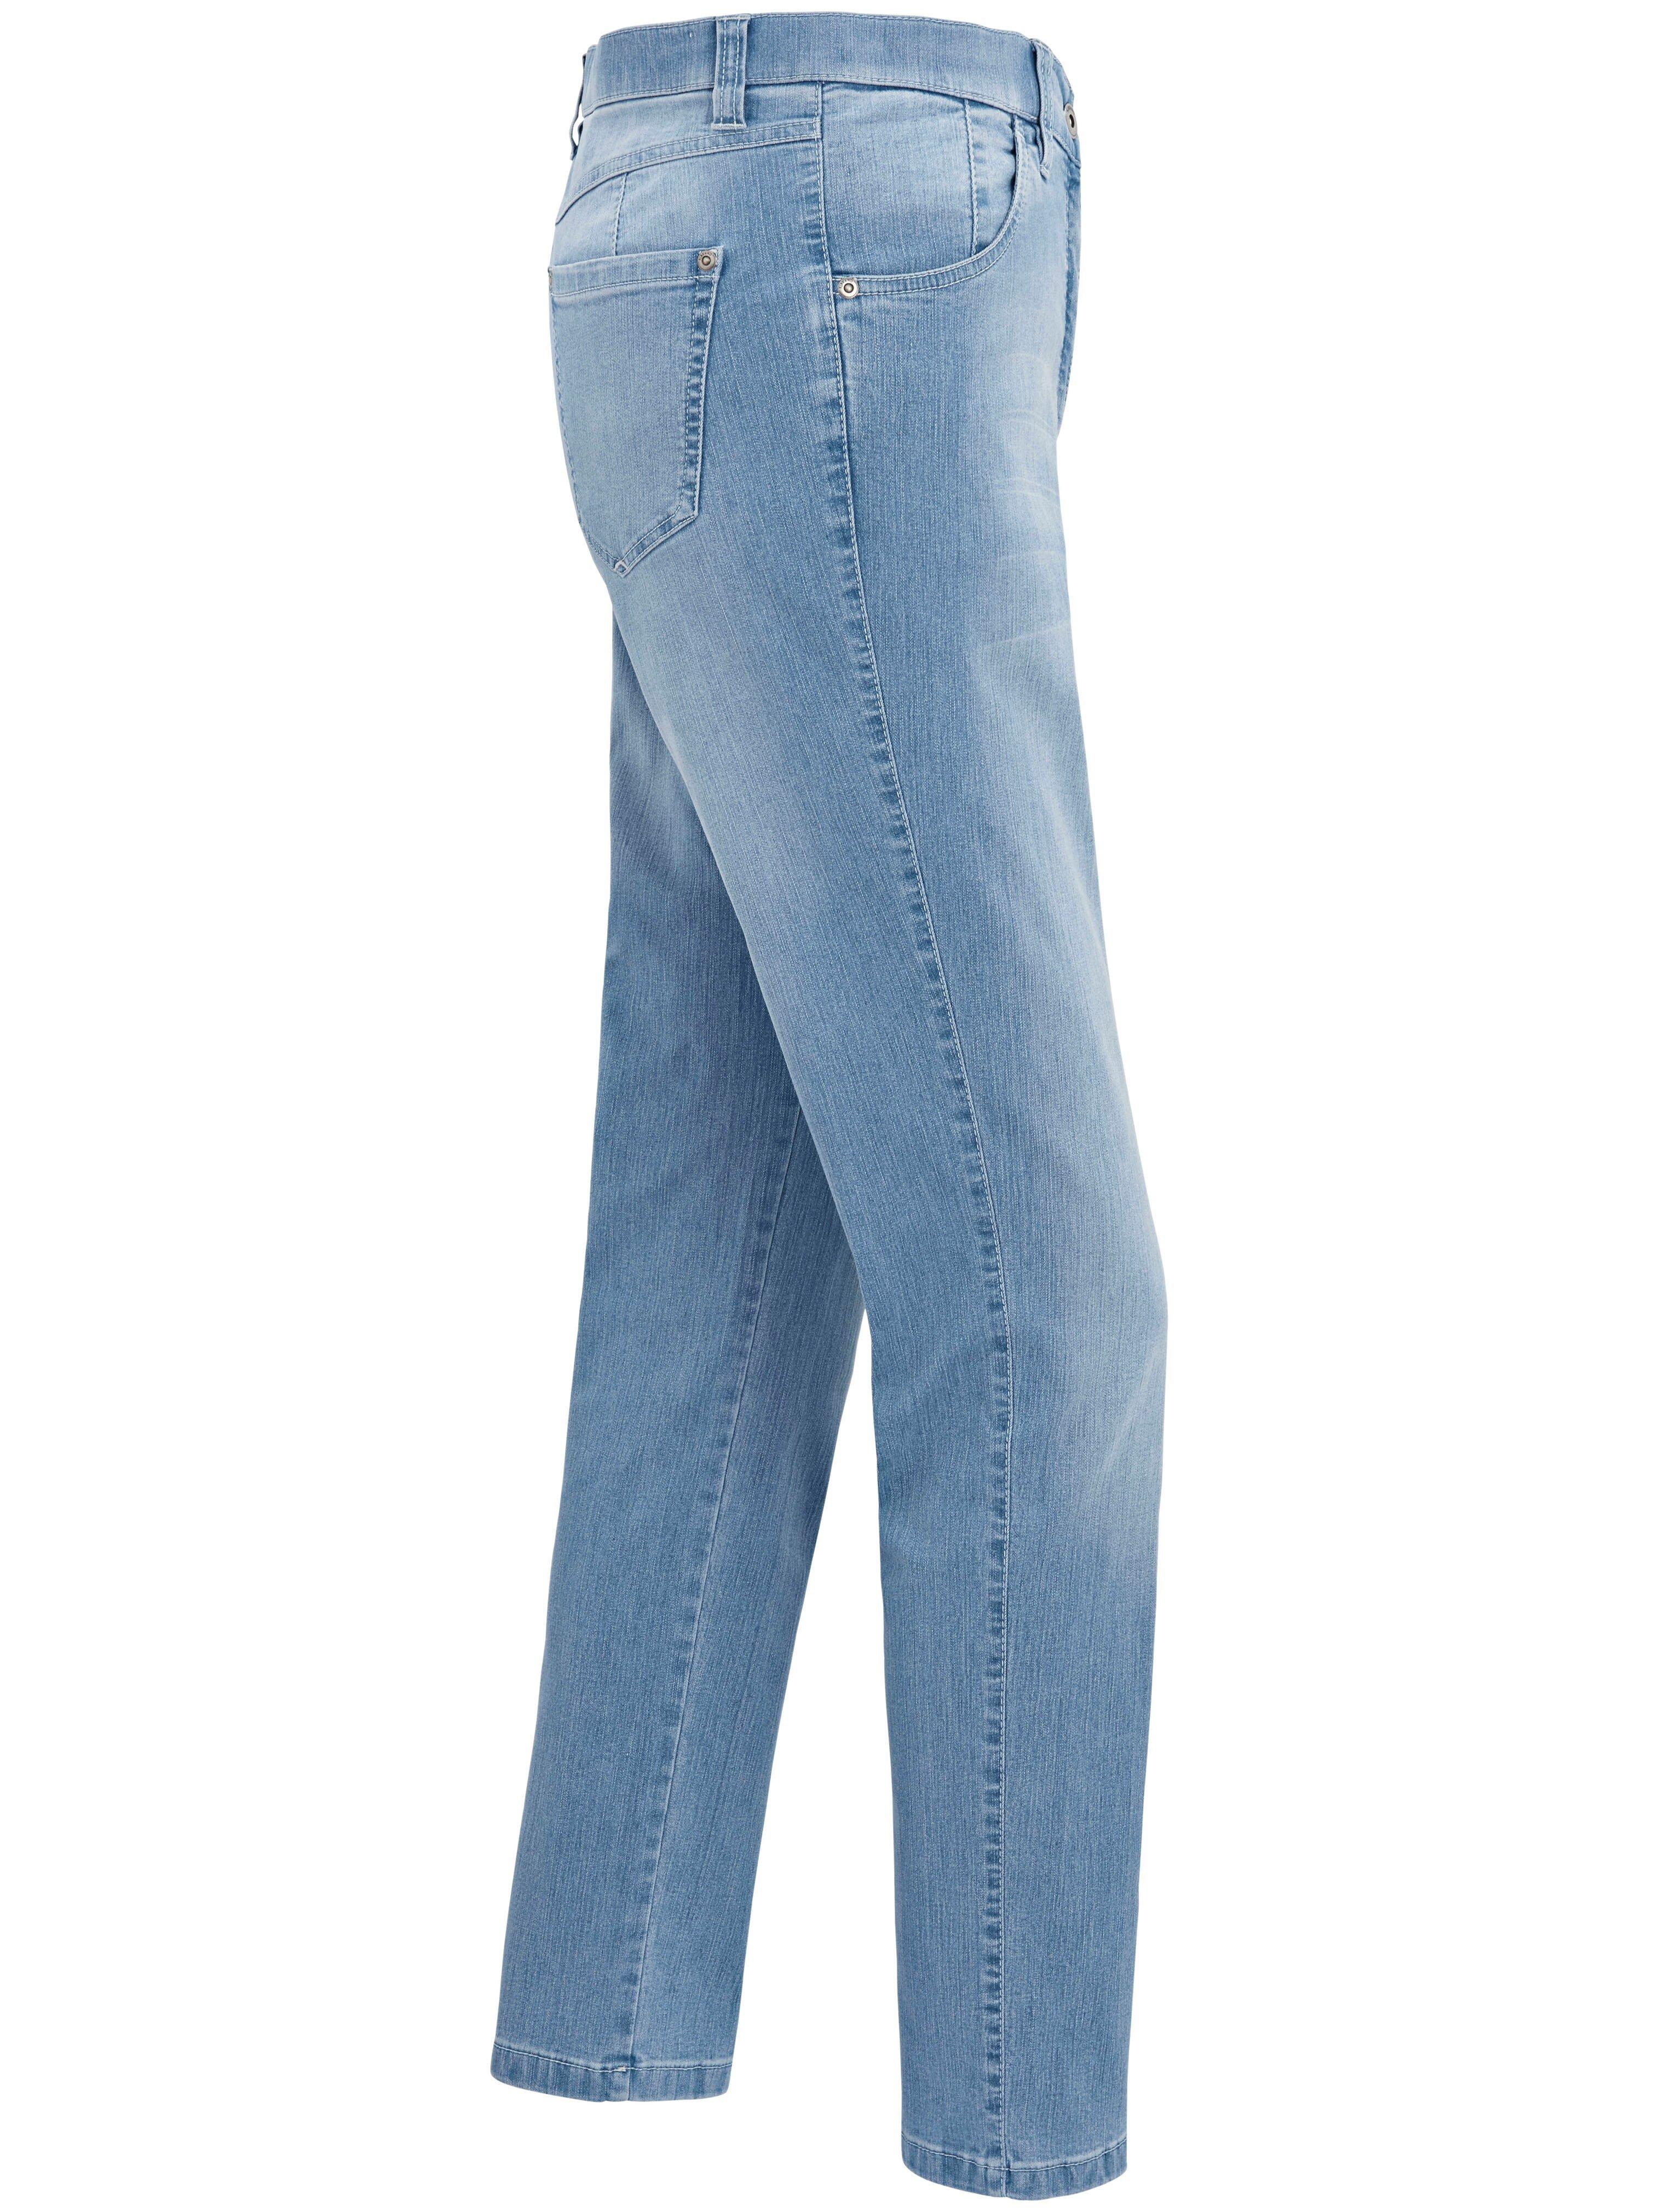 KjBrand - Jeans CS Modell Bleached denim BETTY 